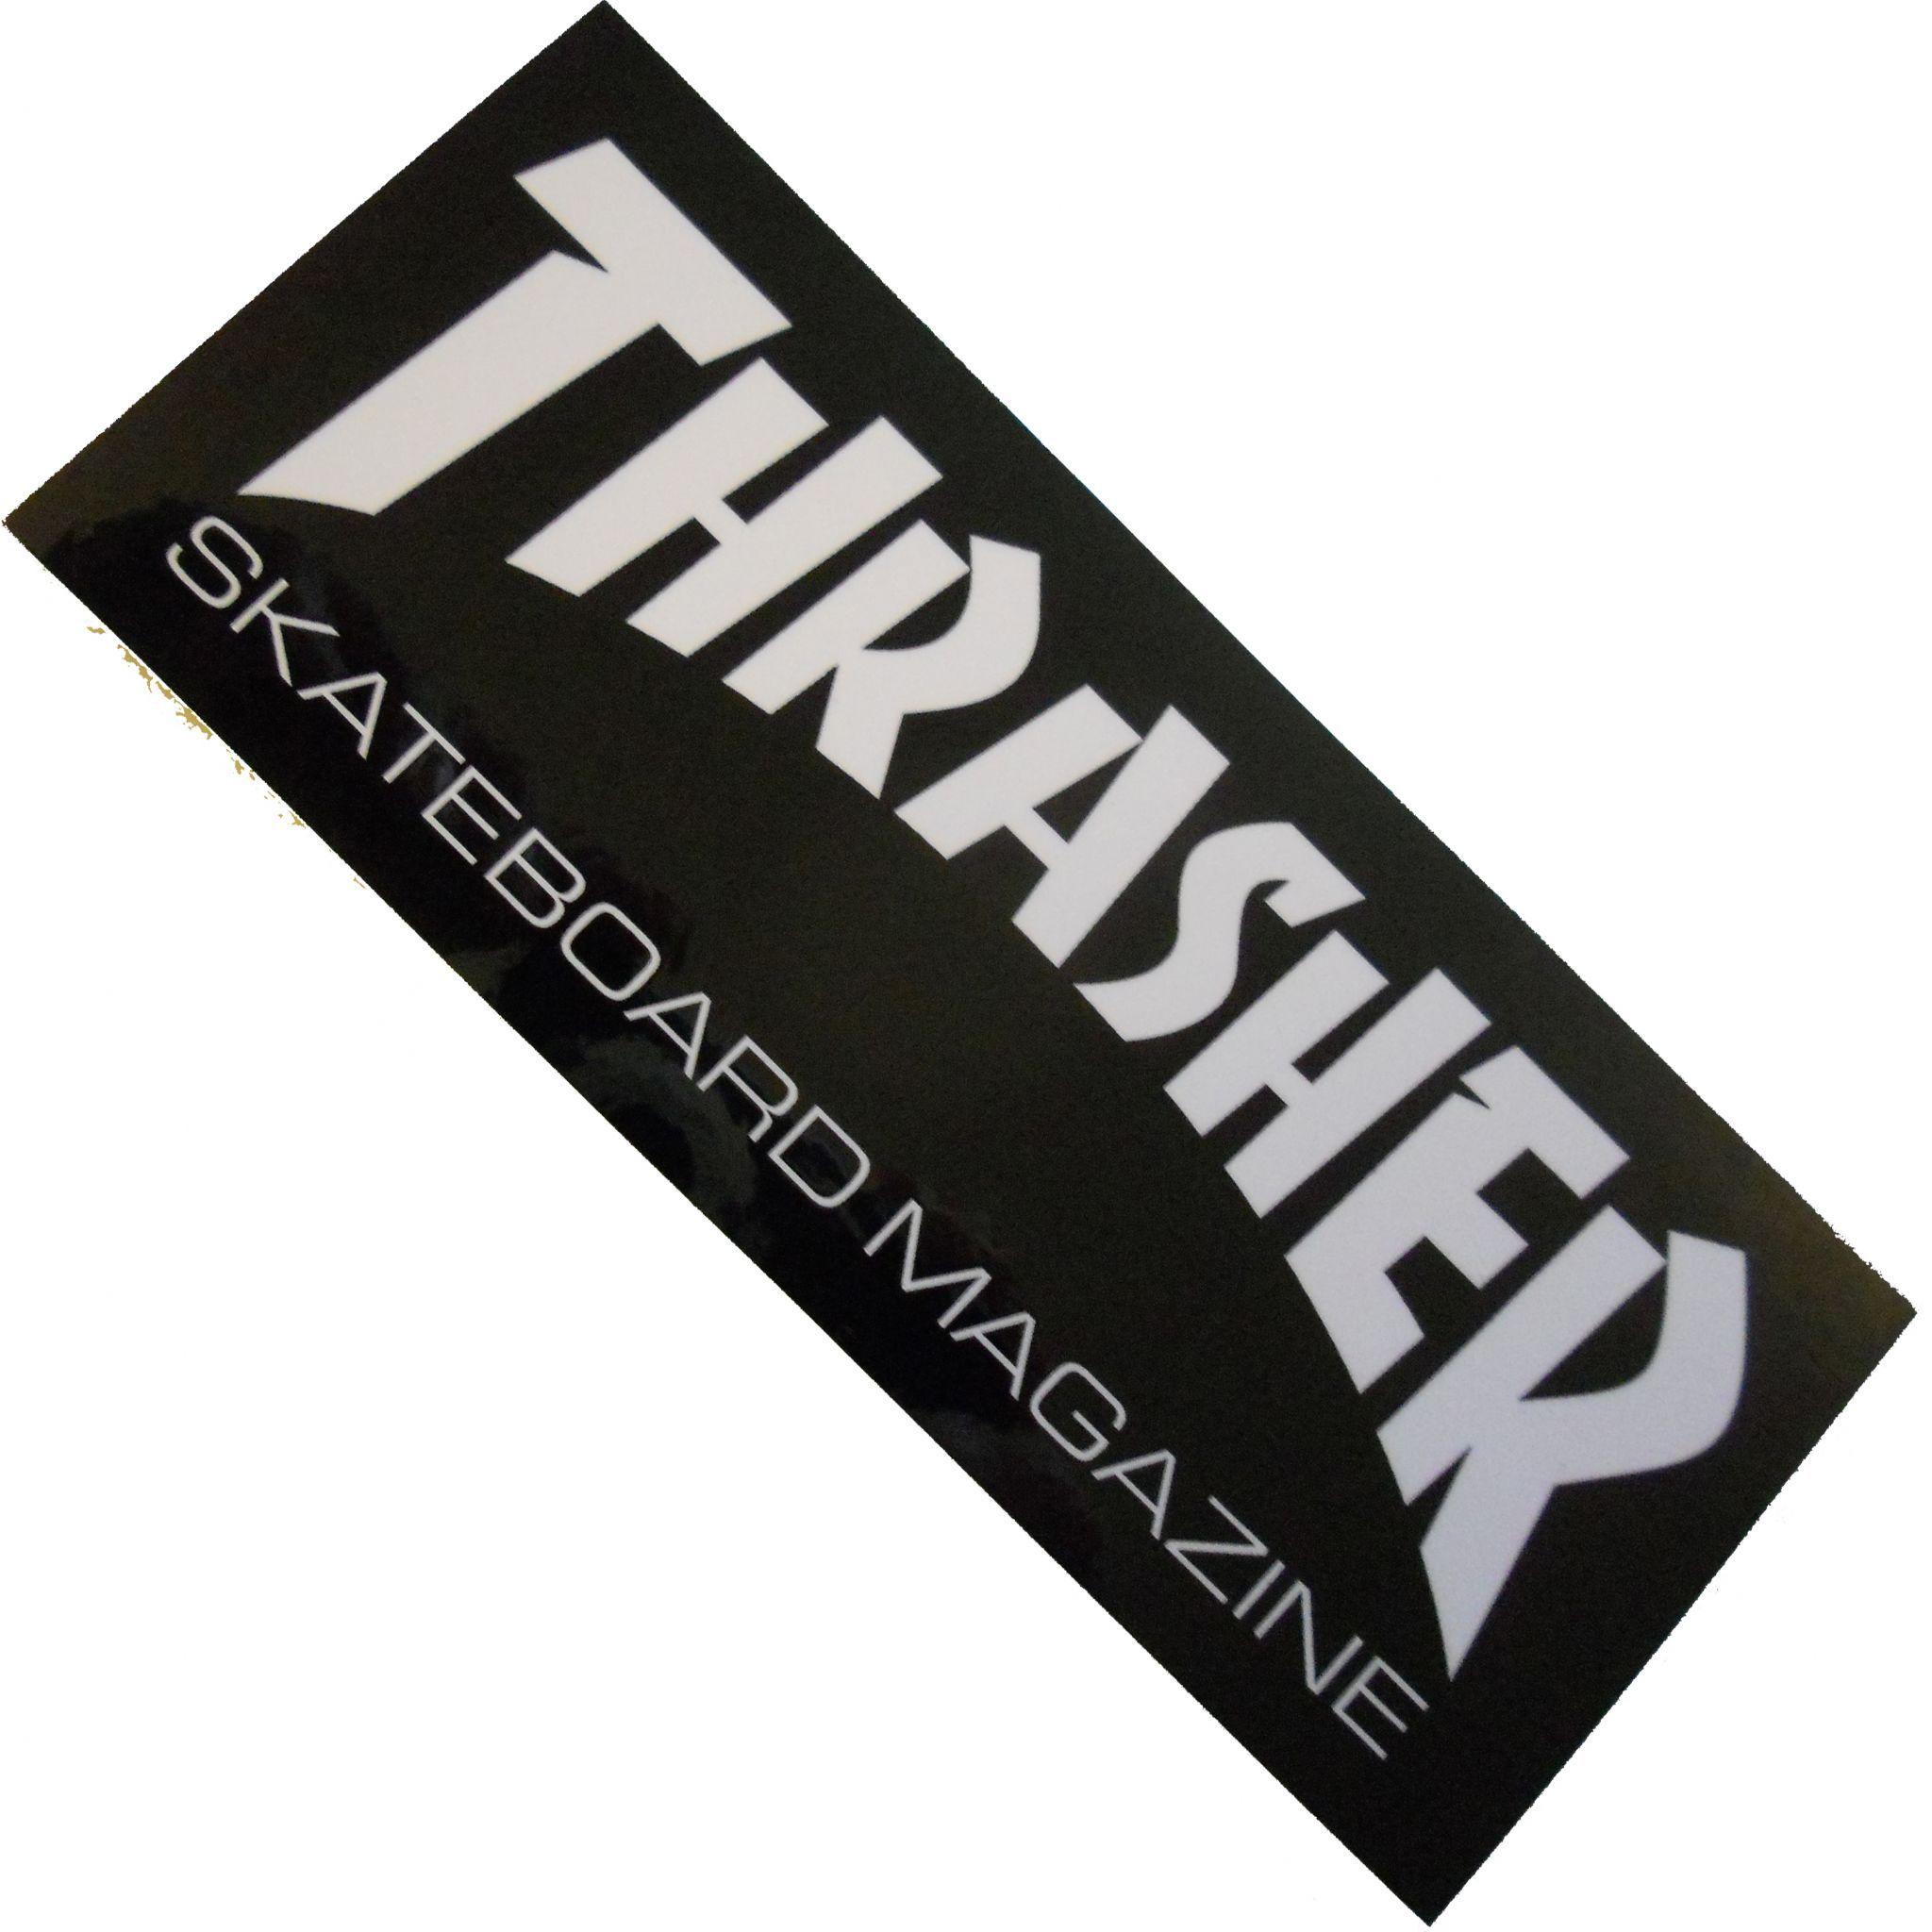 Thrasher Skateboard Magazine Logo - THRASHER Magazine Logo Skateboard Sticker 15cm MEDIUM BLACK White